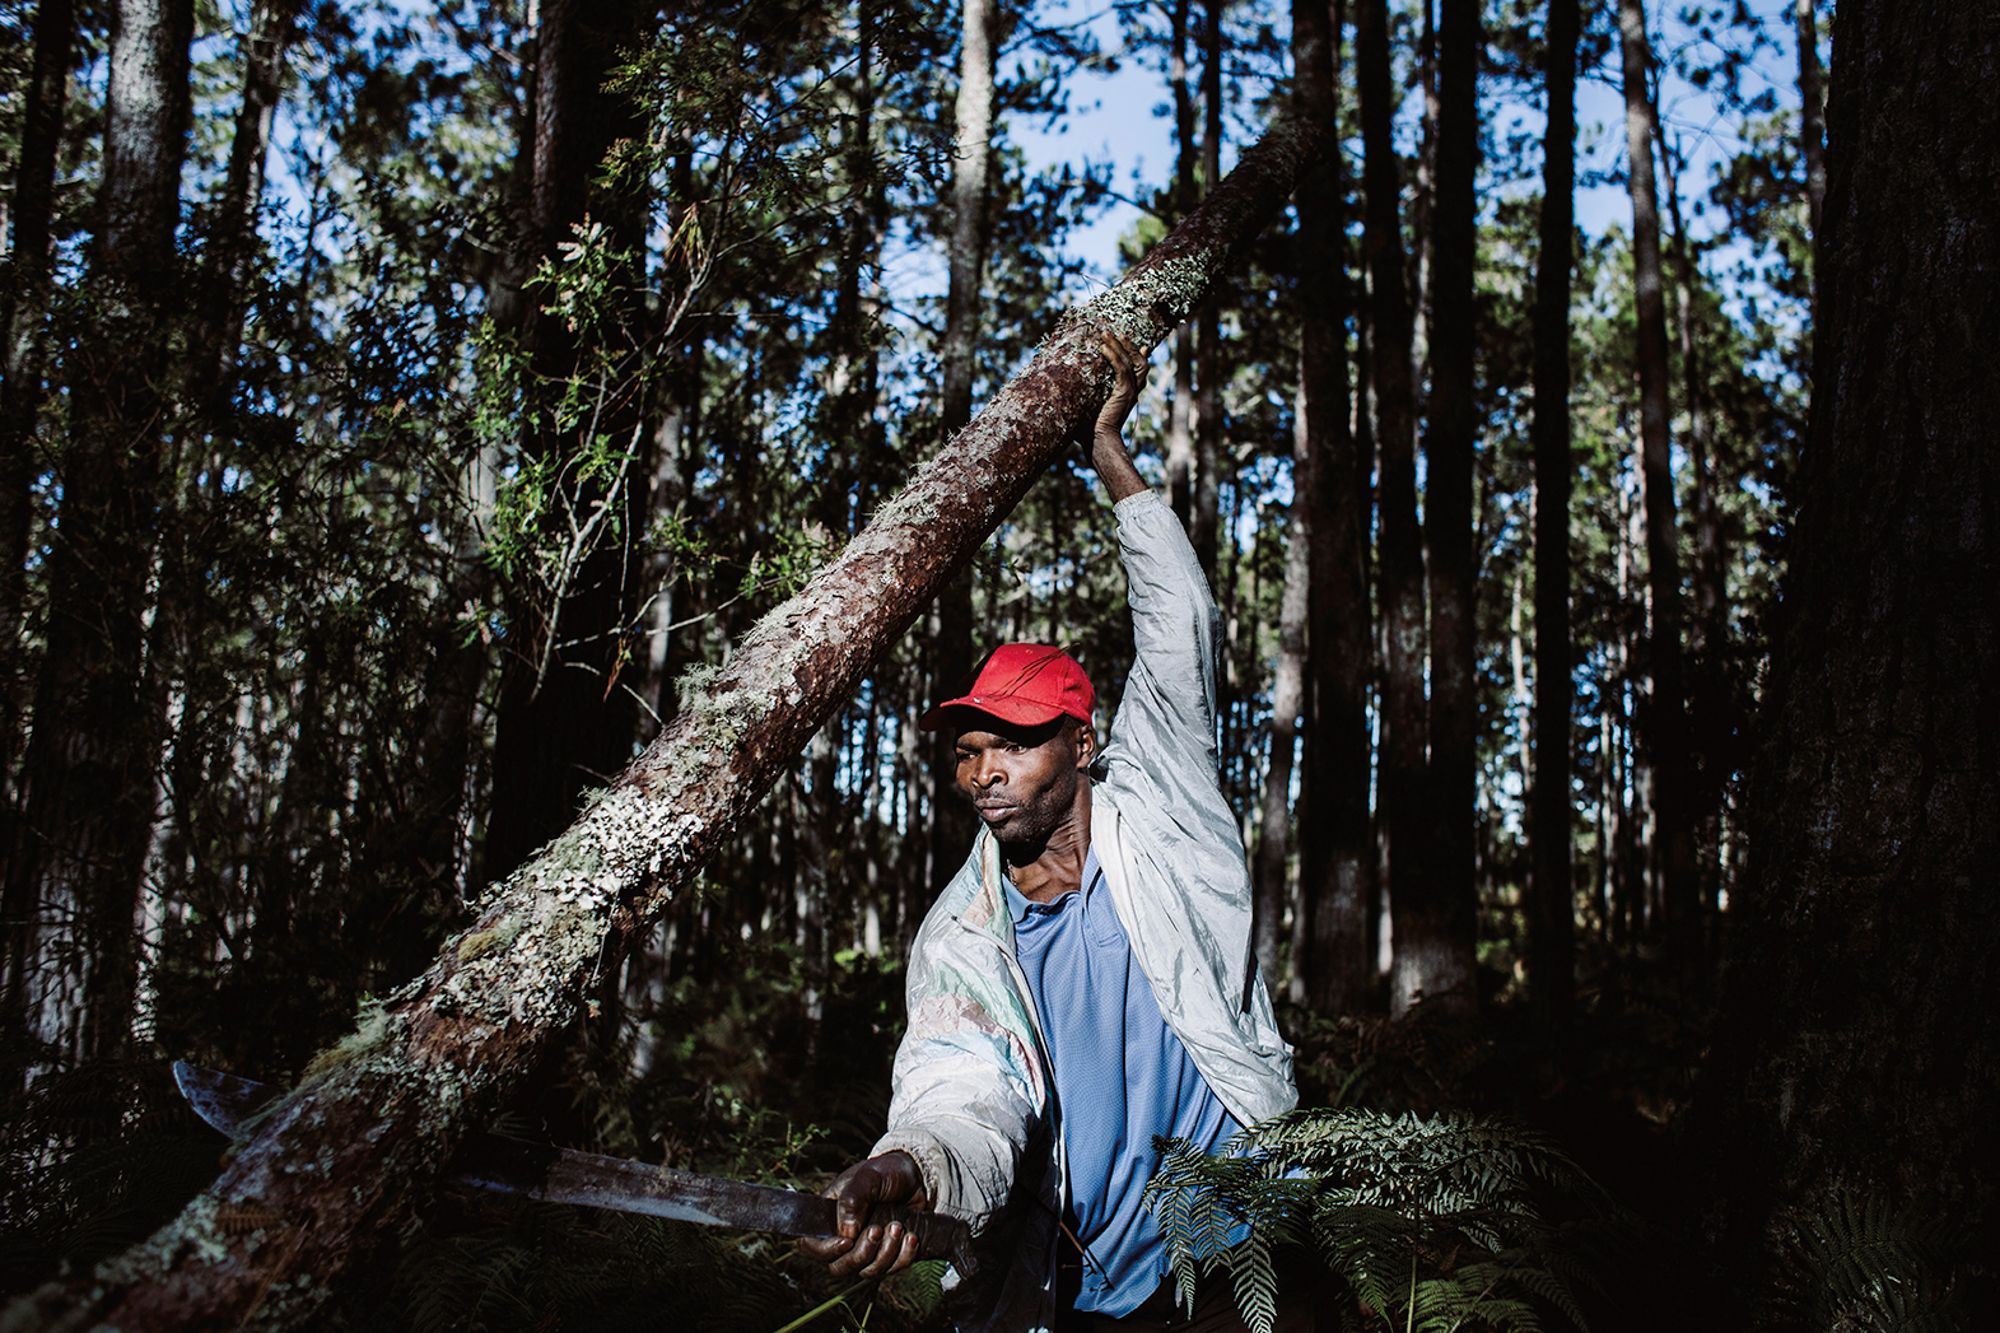 Haïti - La forêt des pins, unité I. Un habitant coupe un arbre. Cette pratique est interdite mais courante dans la forêt. On coupe du bois pour construire sa maison, pour faire du feu de cuisson, pour le vendre, etc. (c) Valérie Baeriswyl